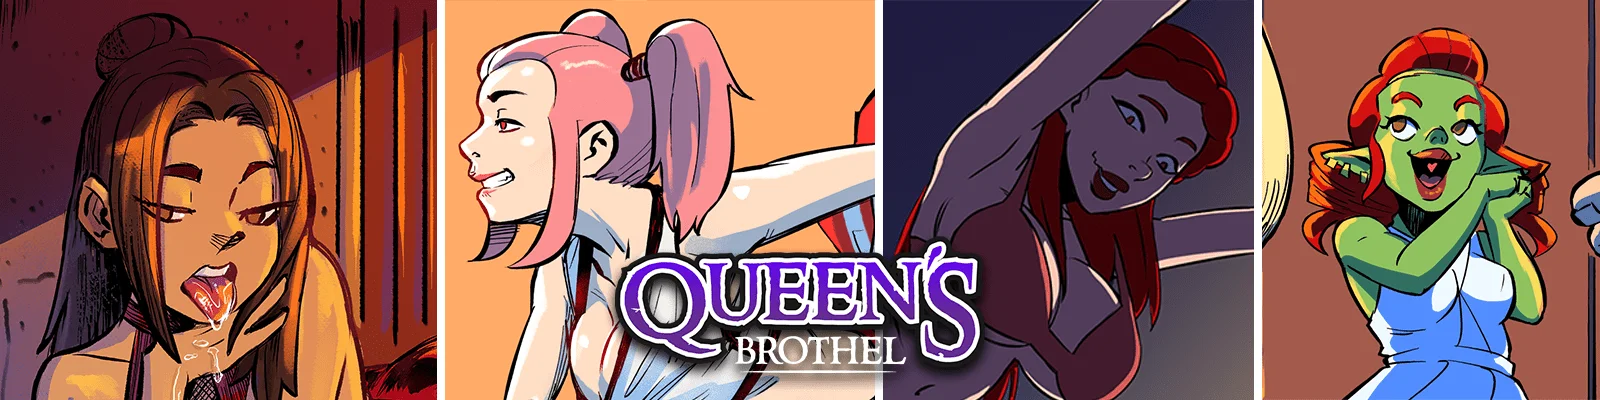 Queen's Brothel v.1.3.1